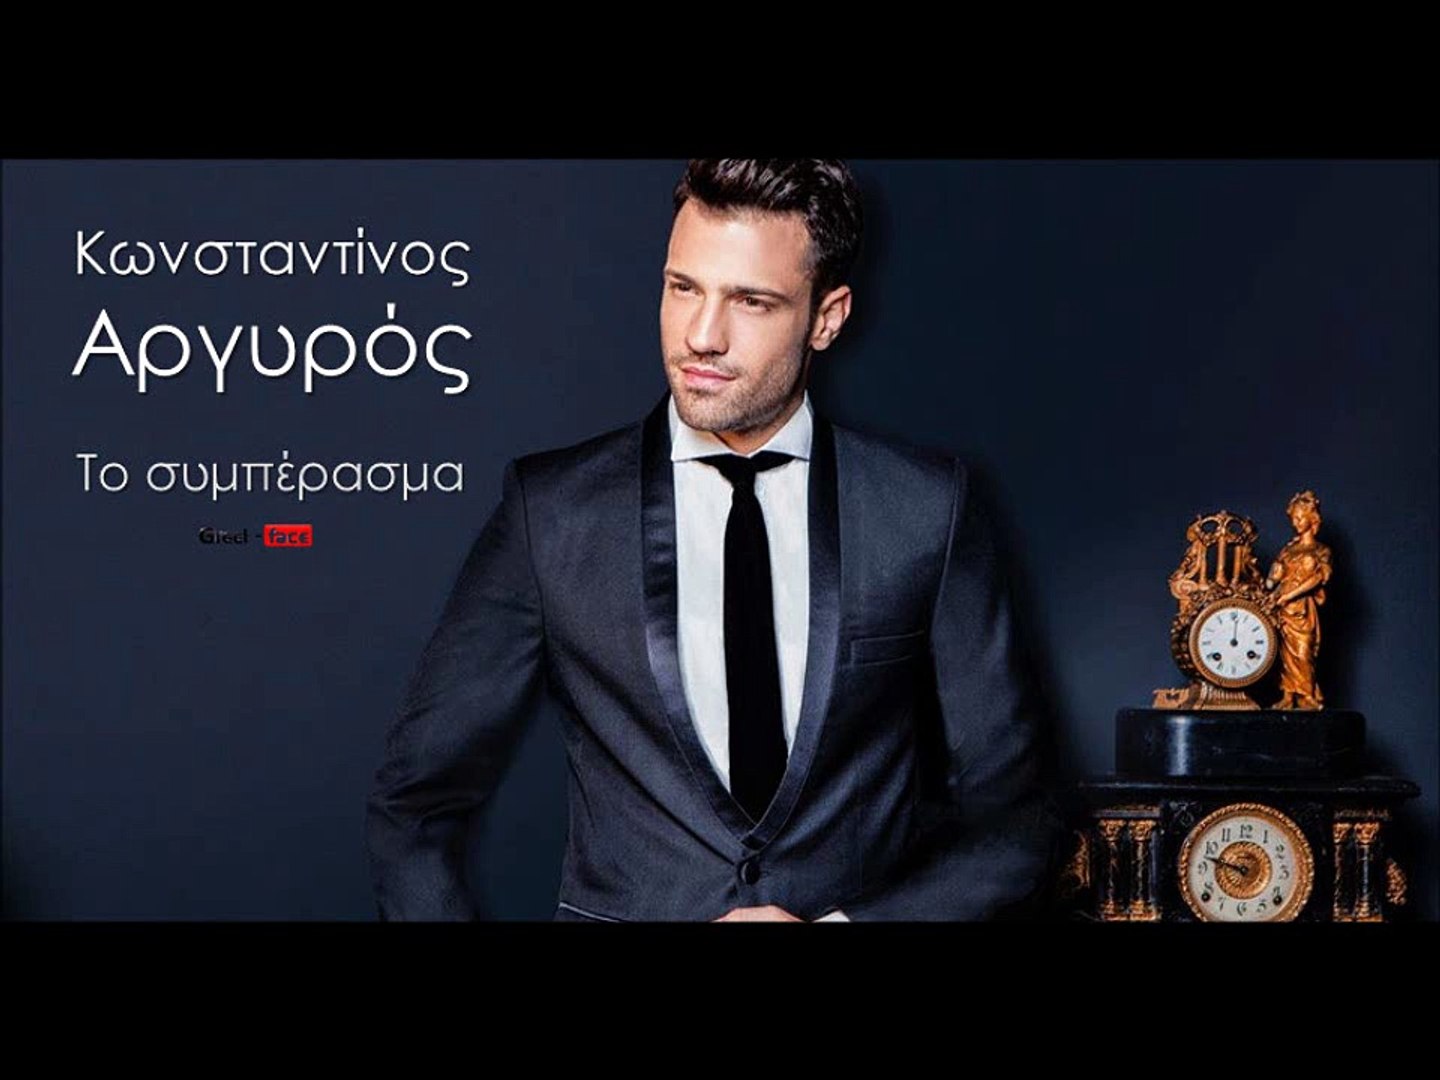 ΚΑ| Κωνσταντίνος Αργυρός - Το συμπέρασμα | 21.10.2015 (Official mp3  hellenicᴴᴰ music web promotion) Greek- face - video Dailymotion